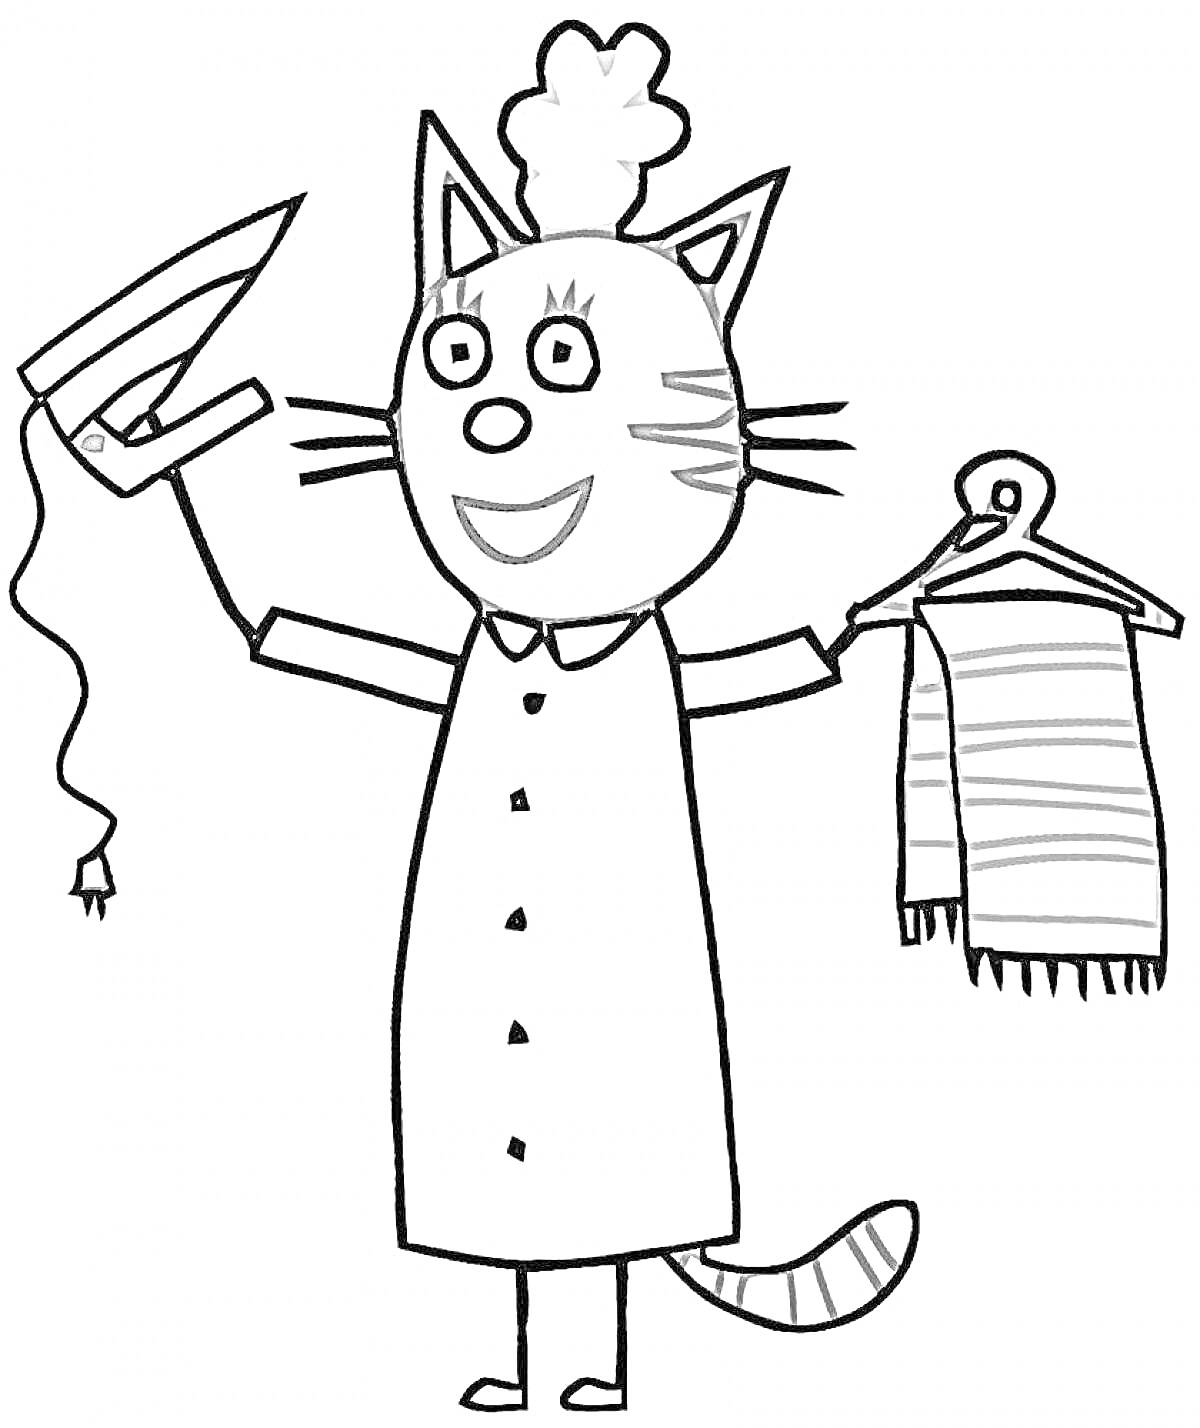 Кошка гладит одежду и держит вешалку с шарфом